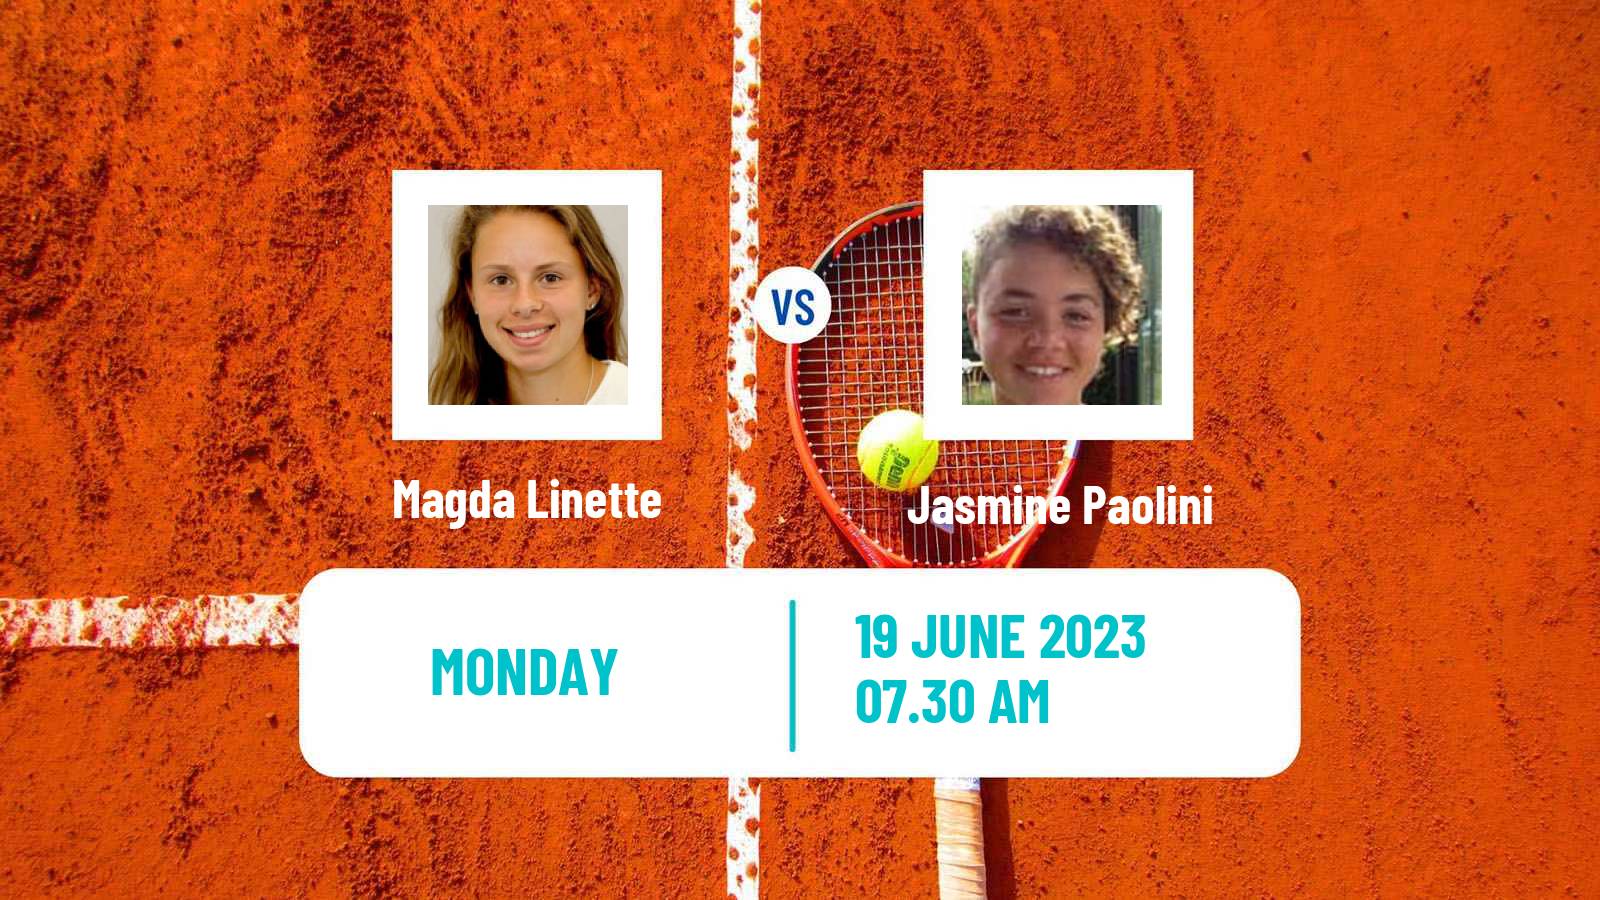 Tennis WTA Birmingham Magda Linette - Jasmine Paolini